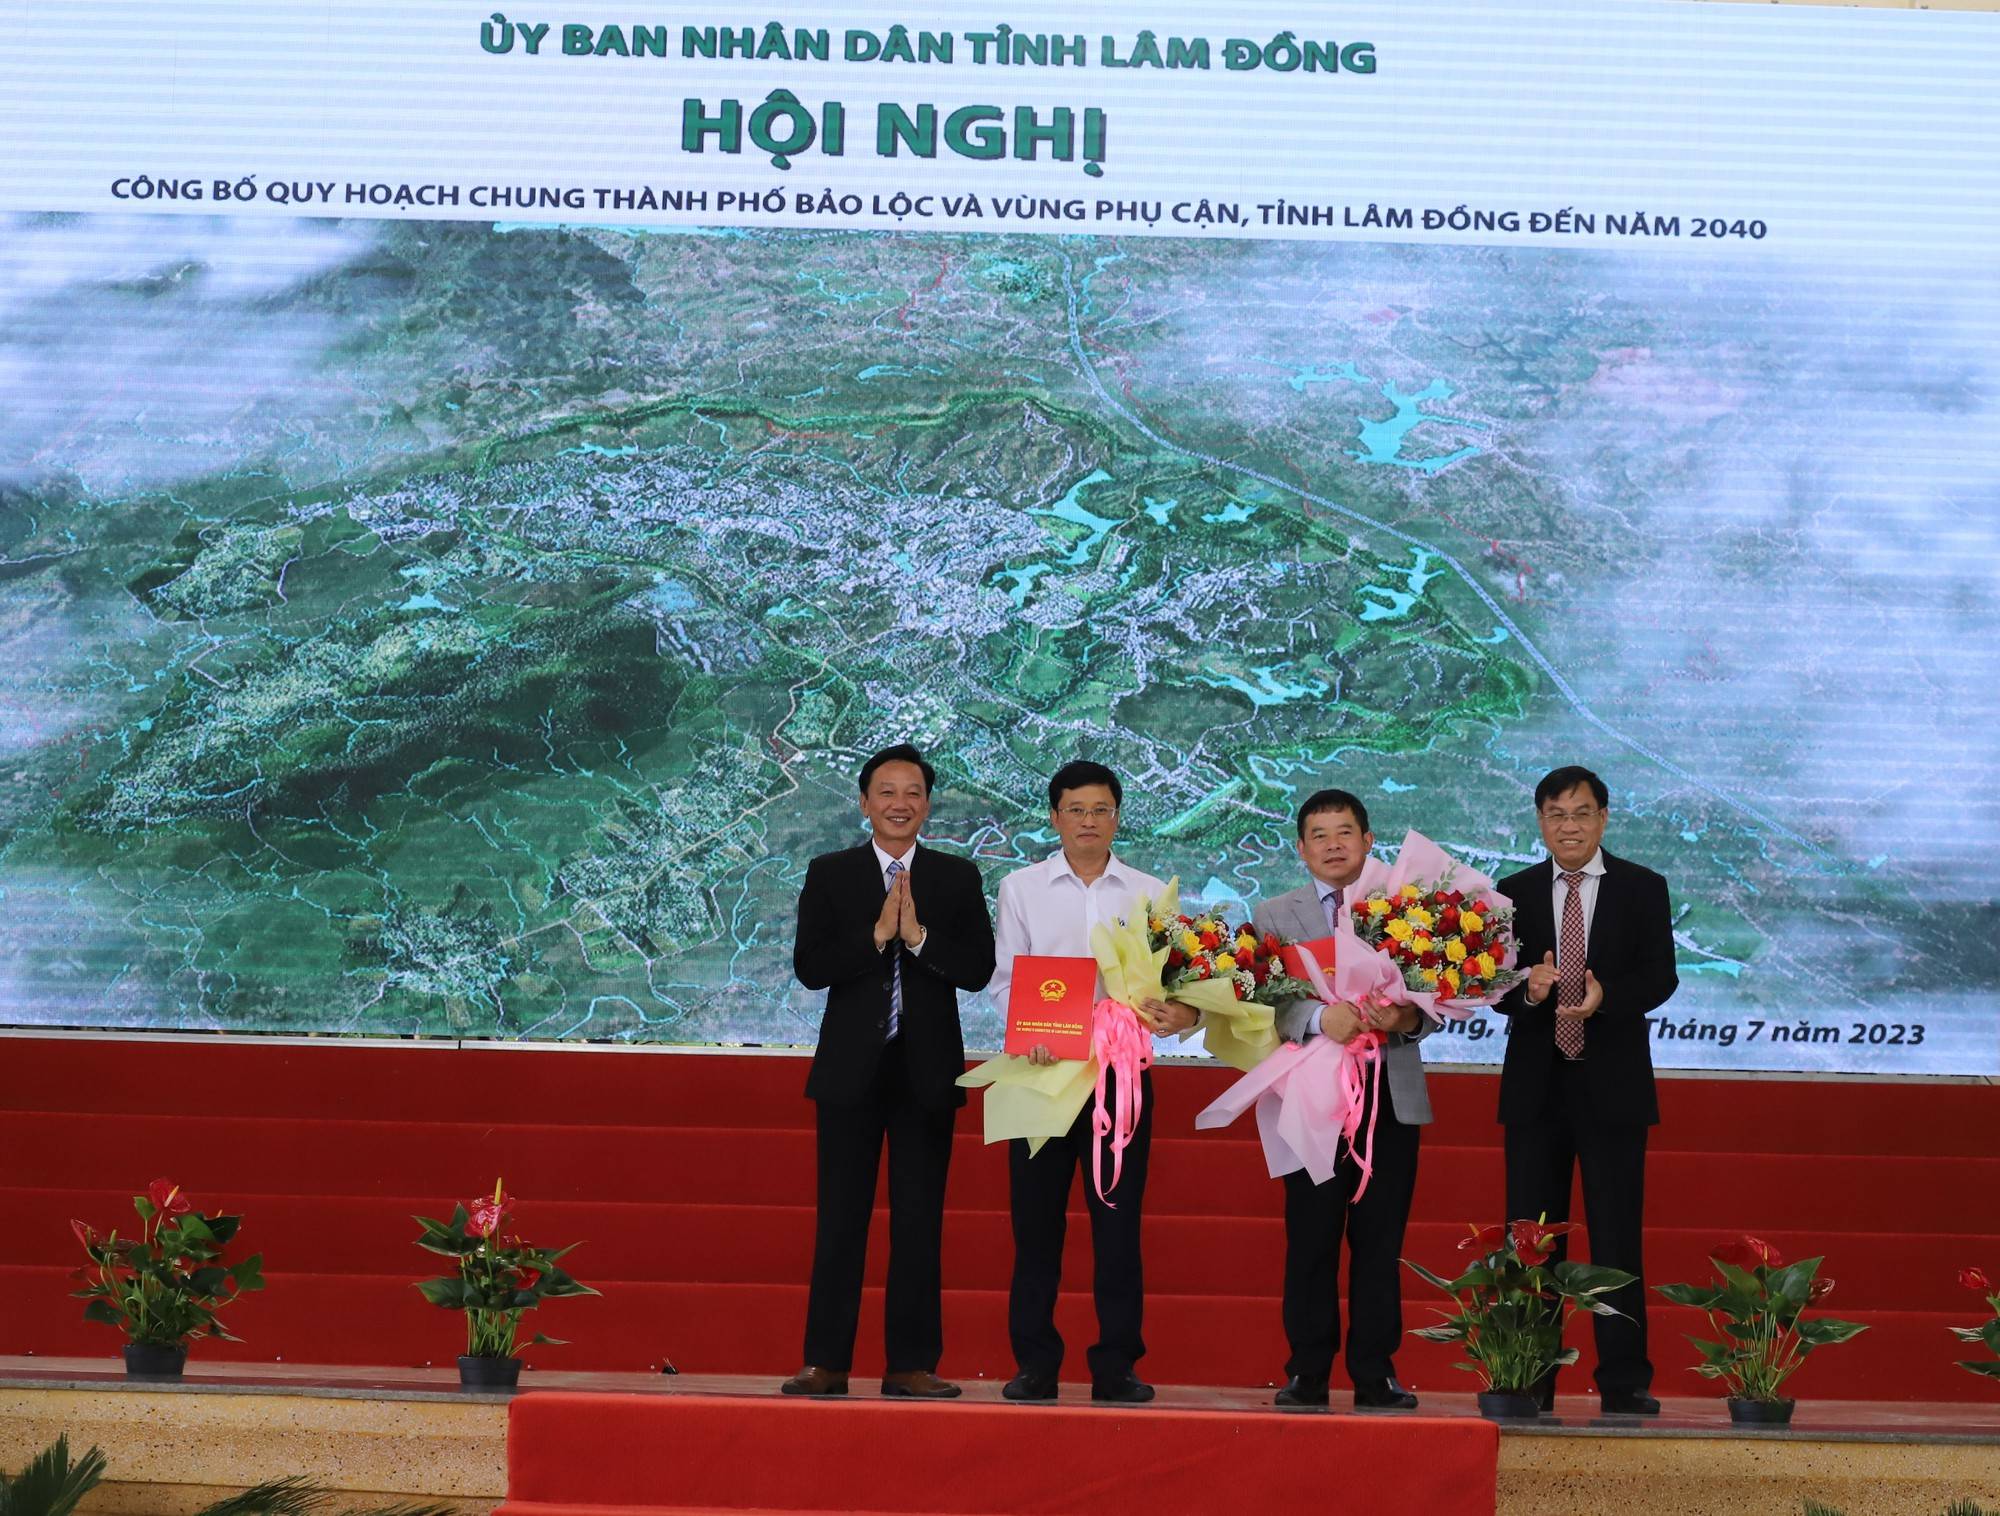 Lâm Đồng: TP.Bảo Lộc trở thành đô thị tiệm cận loại 1 vào năm 2040